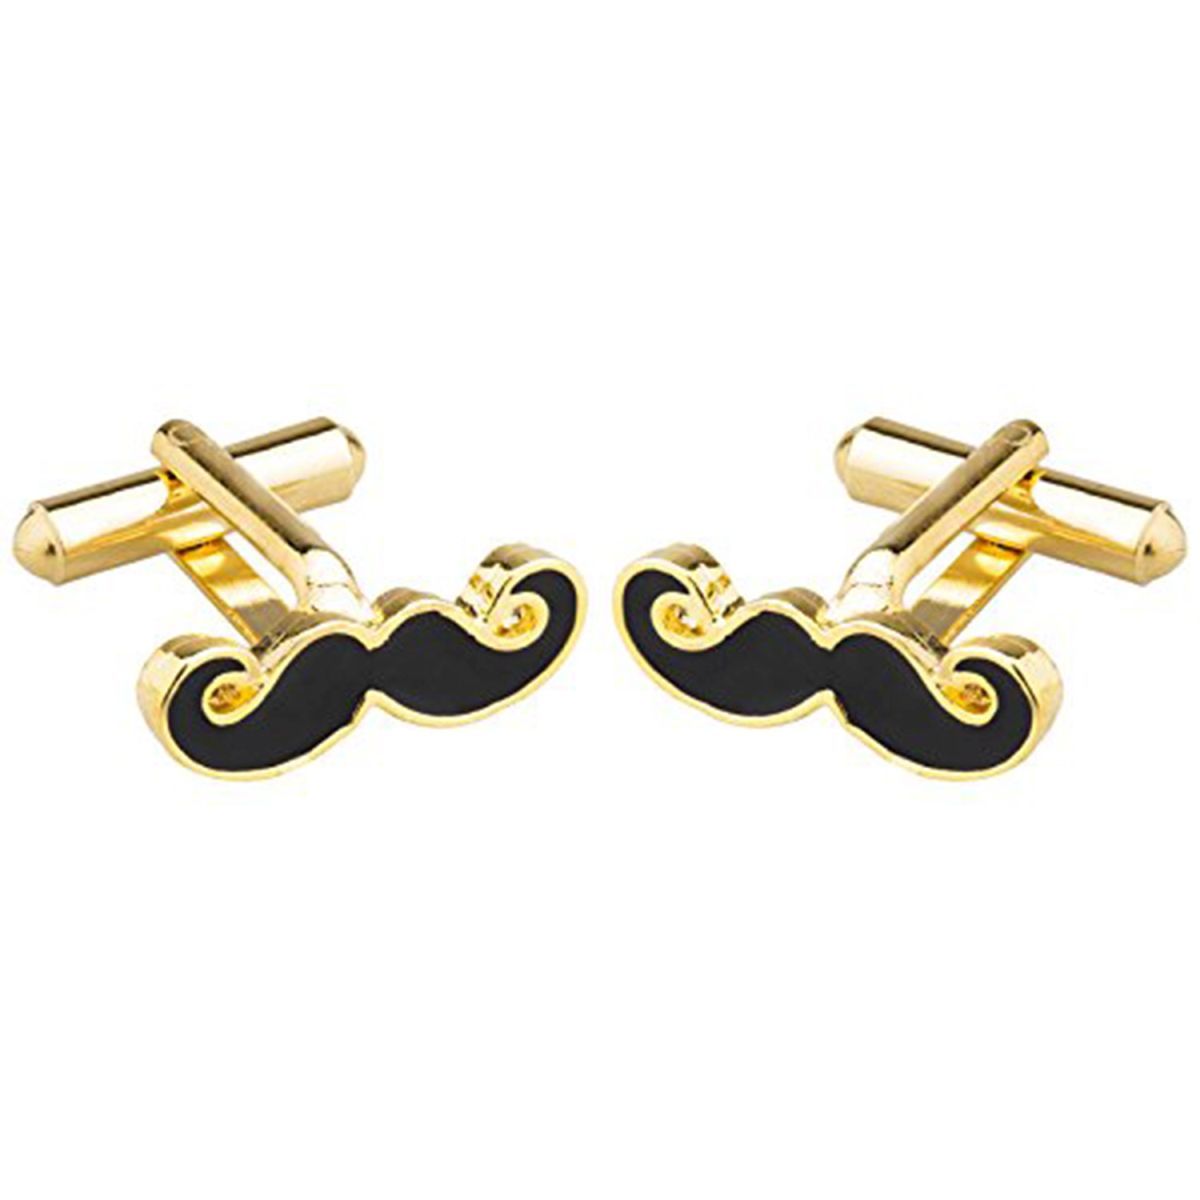 Fancy Gold Mooch Moustache Cufflinks In Box